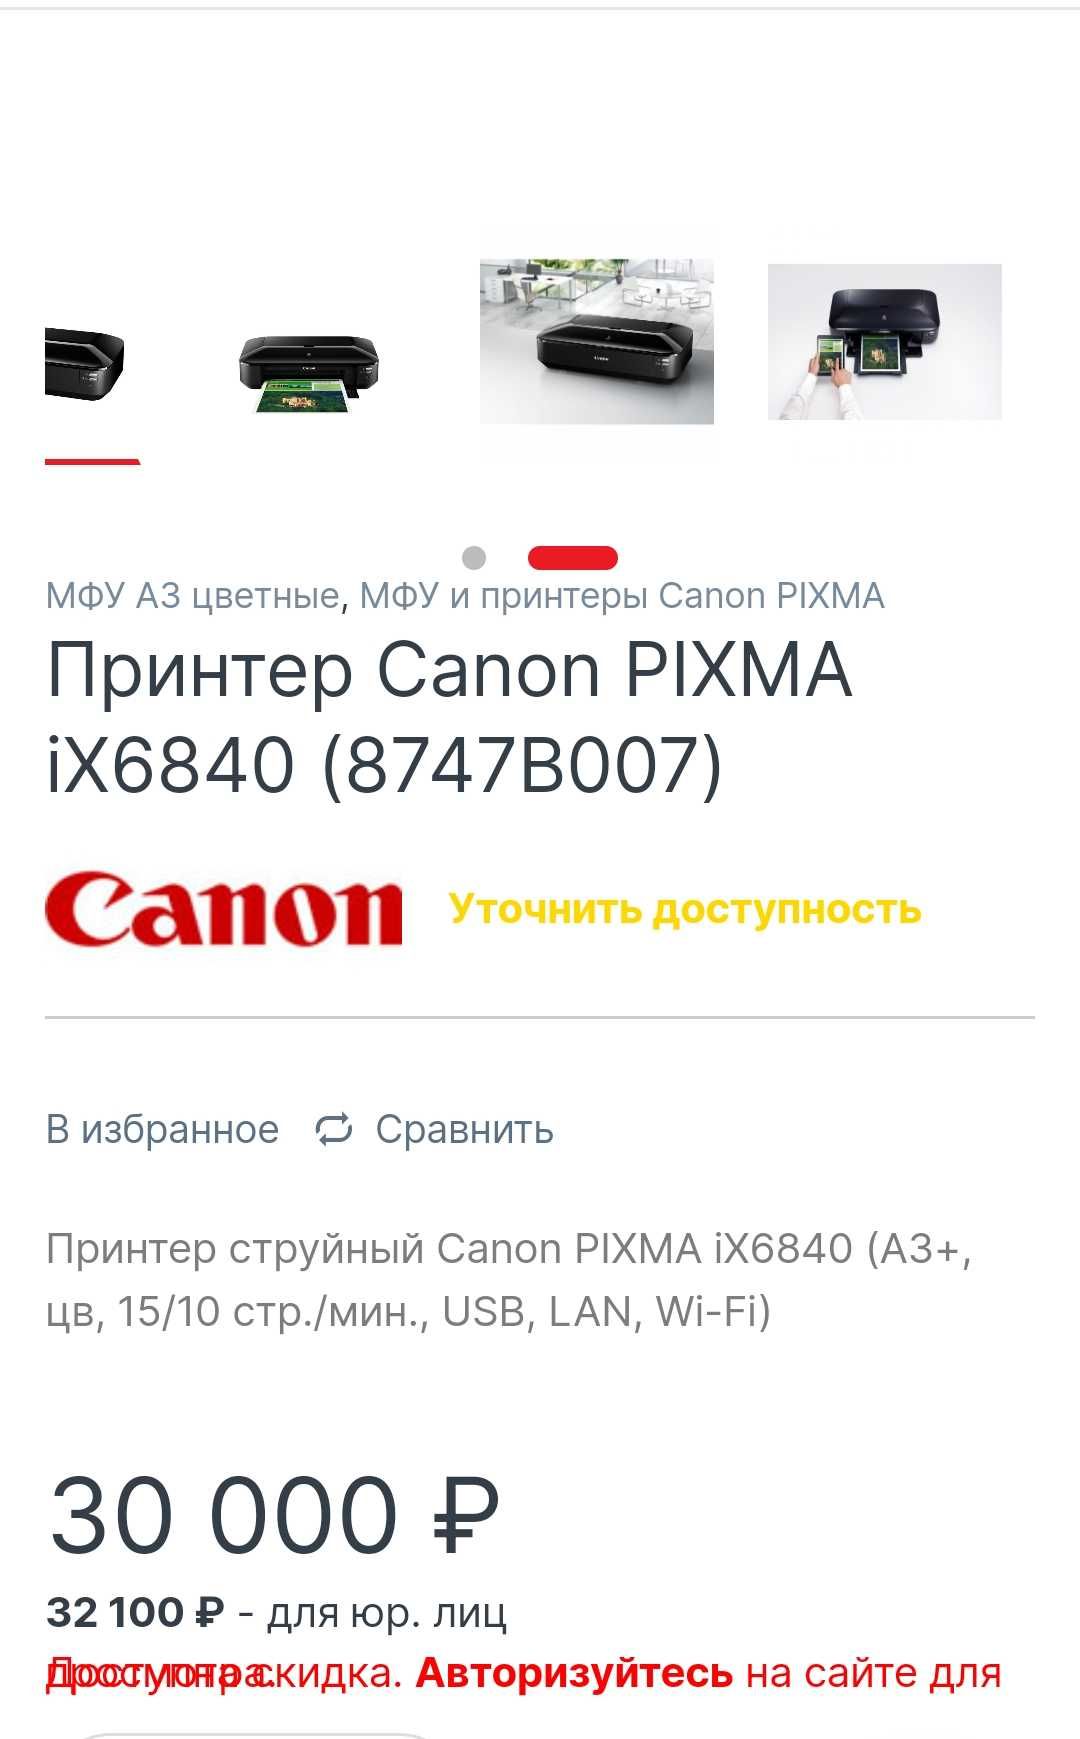 Принтер CANON PIXMA ix6840.